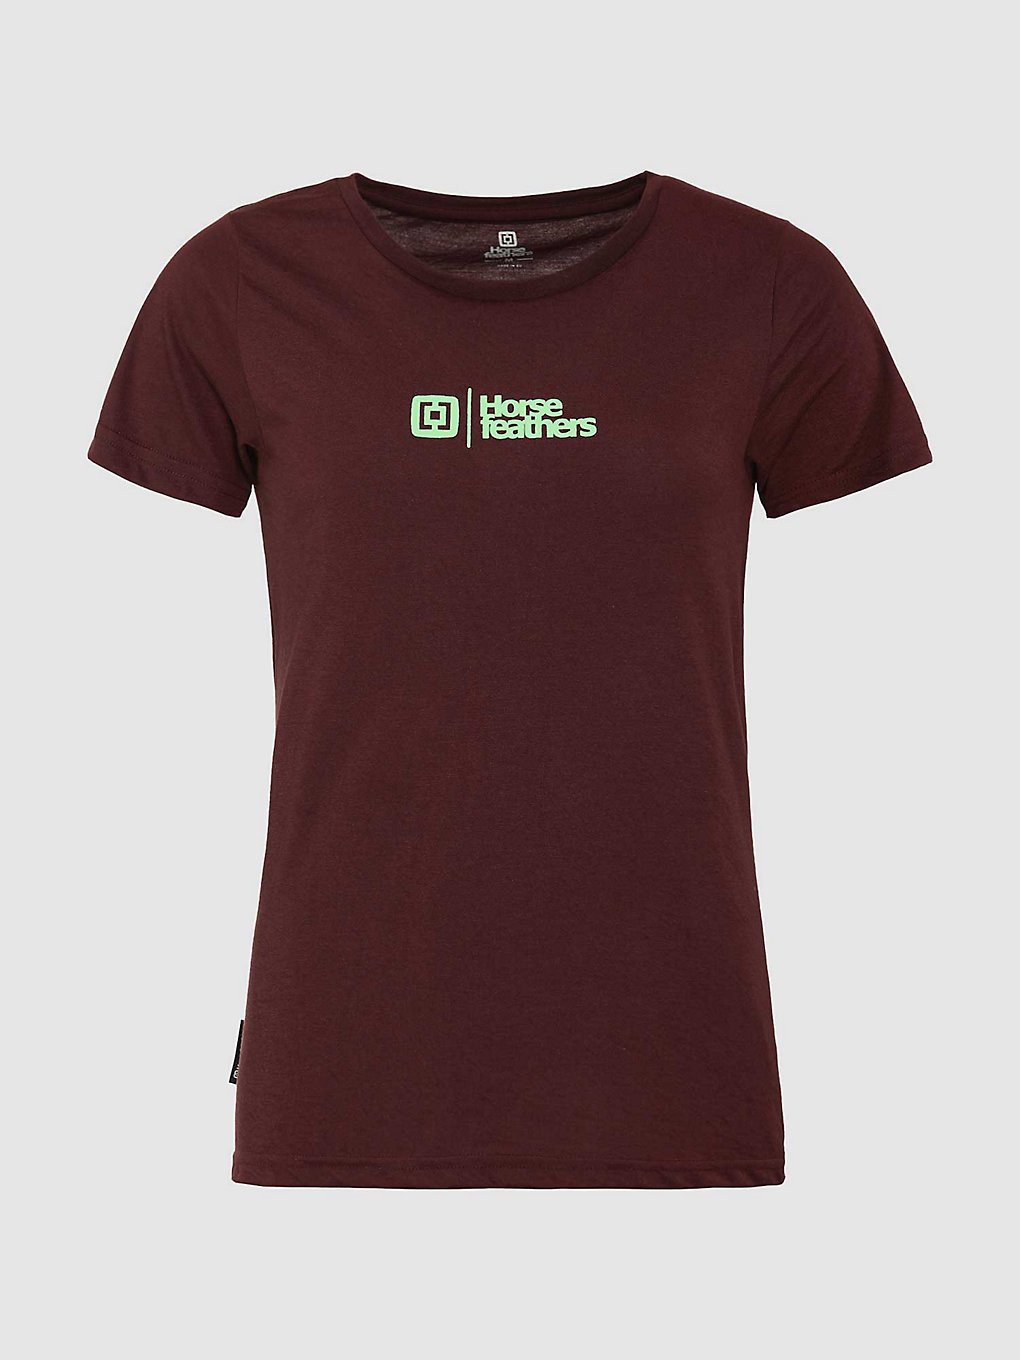 Horsefeathers Leila T-Shirt burgundy kaufen